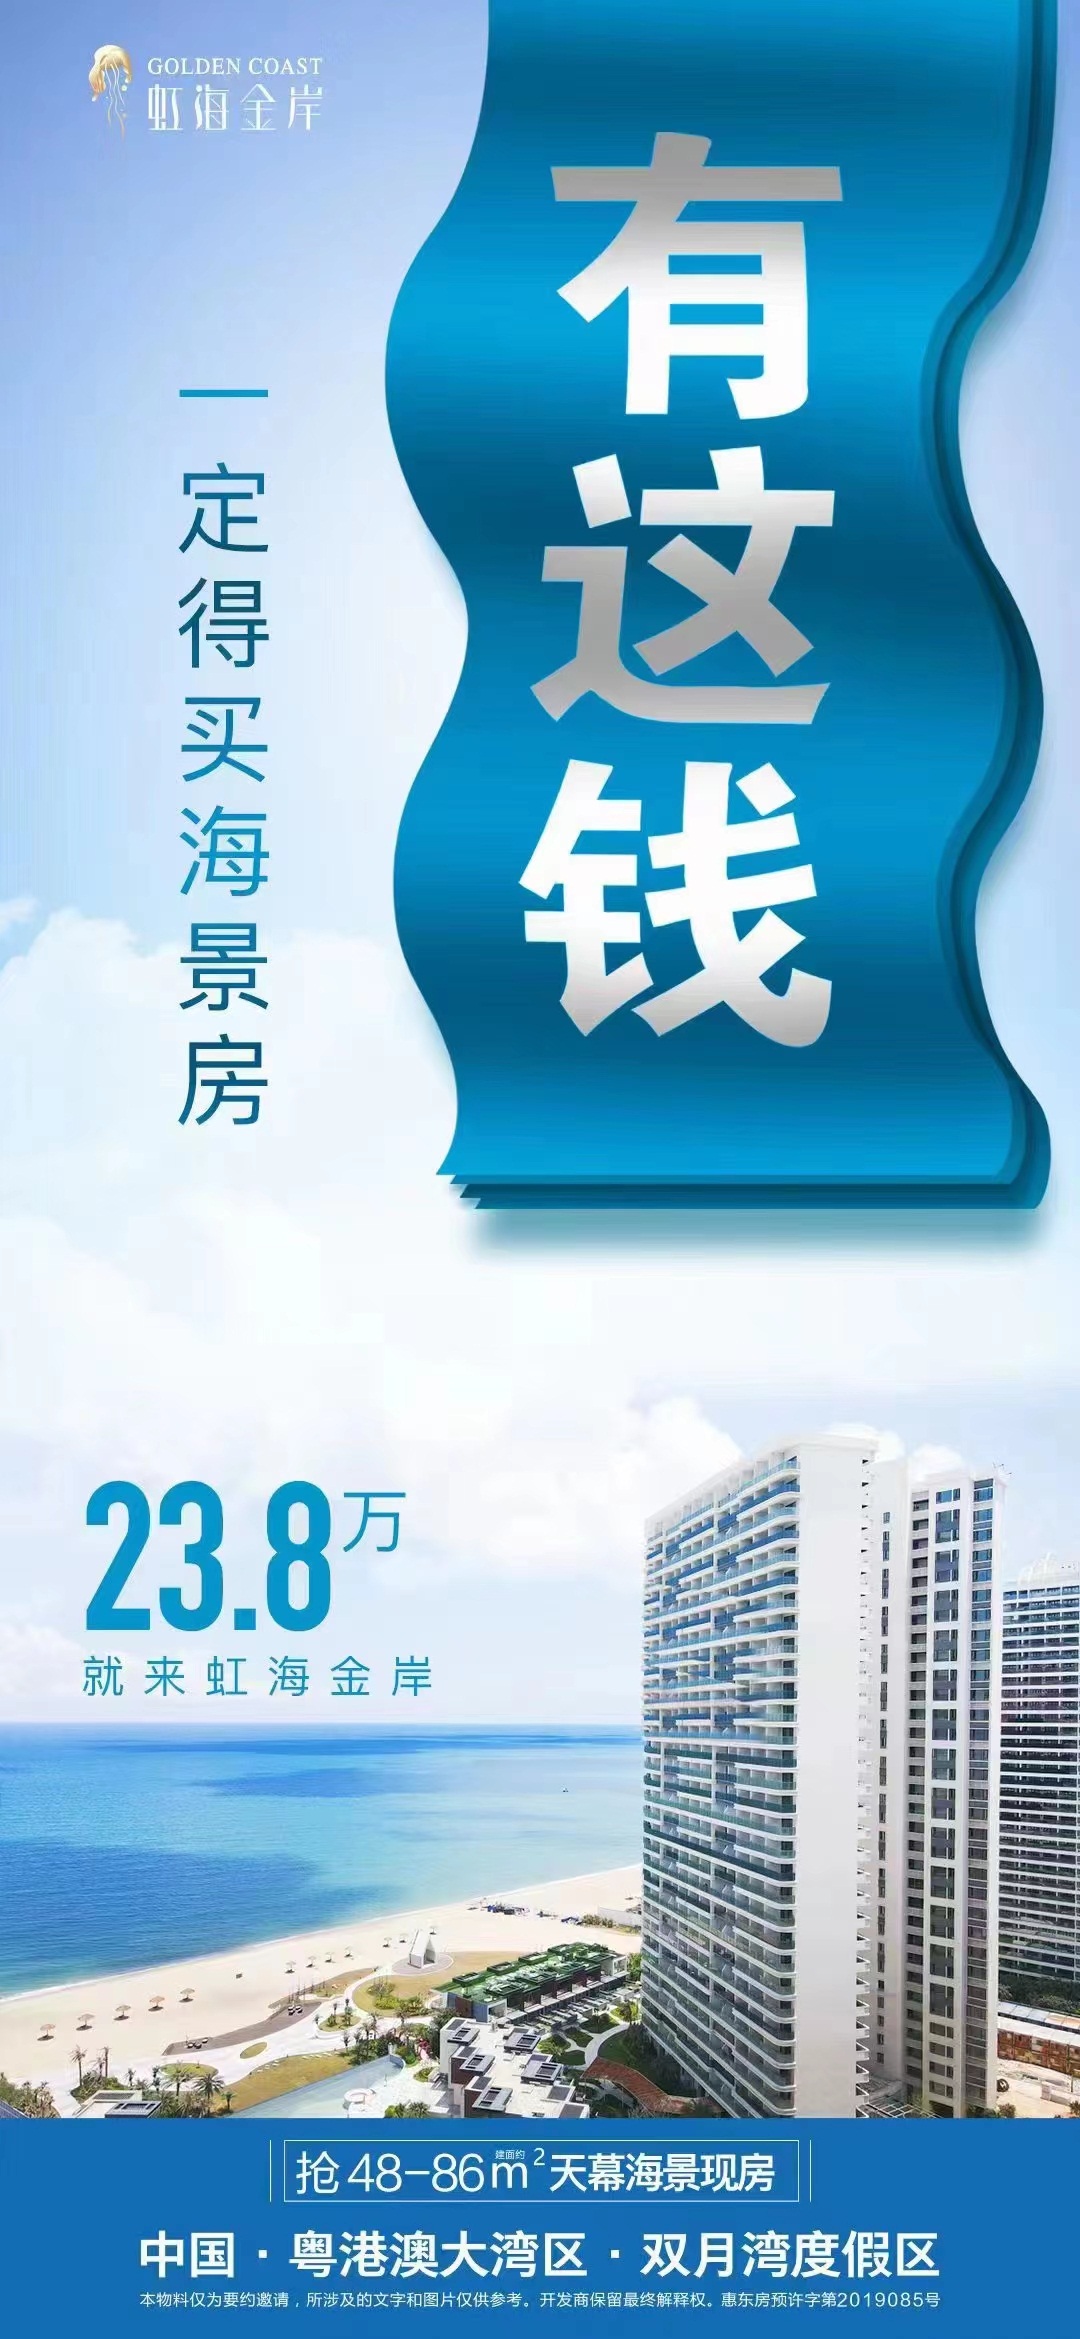 惠州双月湾外海一线海景现房公寓虹海金岸 23.8万-40万任选 加推300套 阳台看海楼下沙滩-房来咯